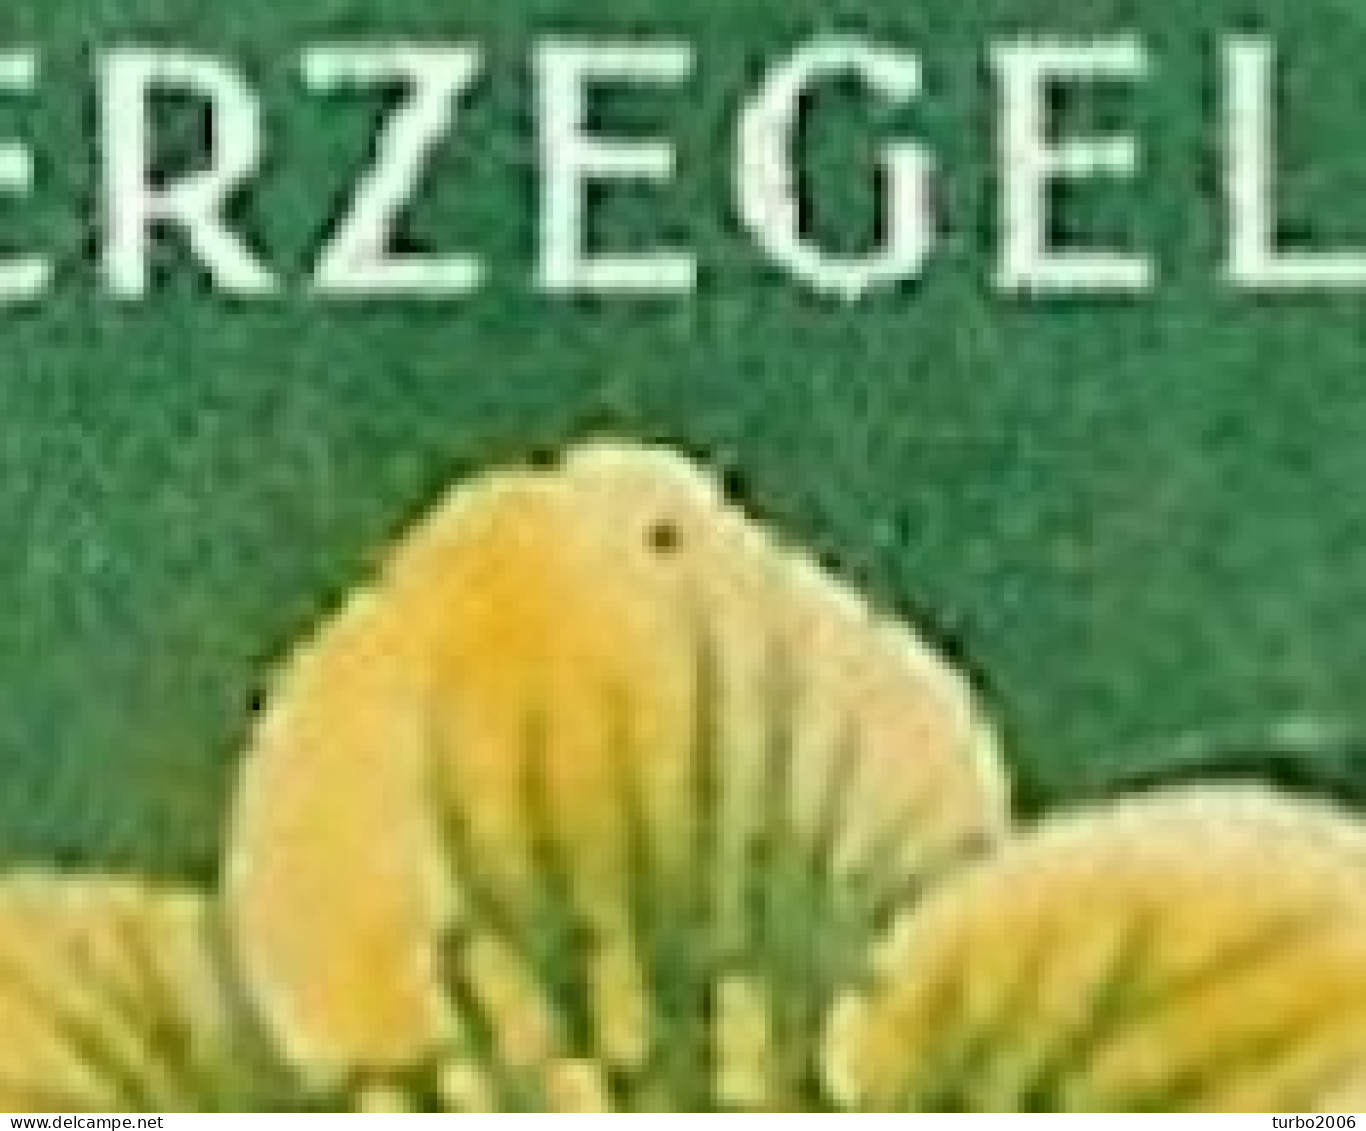 Plaatfout Groen Puntje In Het Bovenste Bloemblad 1952 Zomerzegels Bloemen 5 + 3 Ct Groen / Geel NVPH 584 PM Ongestempeld - Plaatfouten En Curiosa